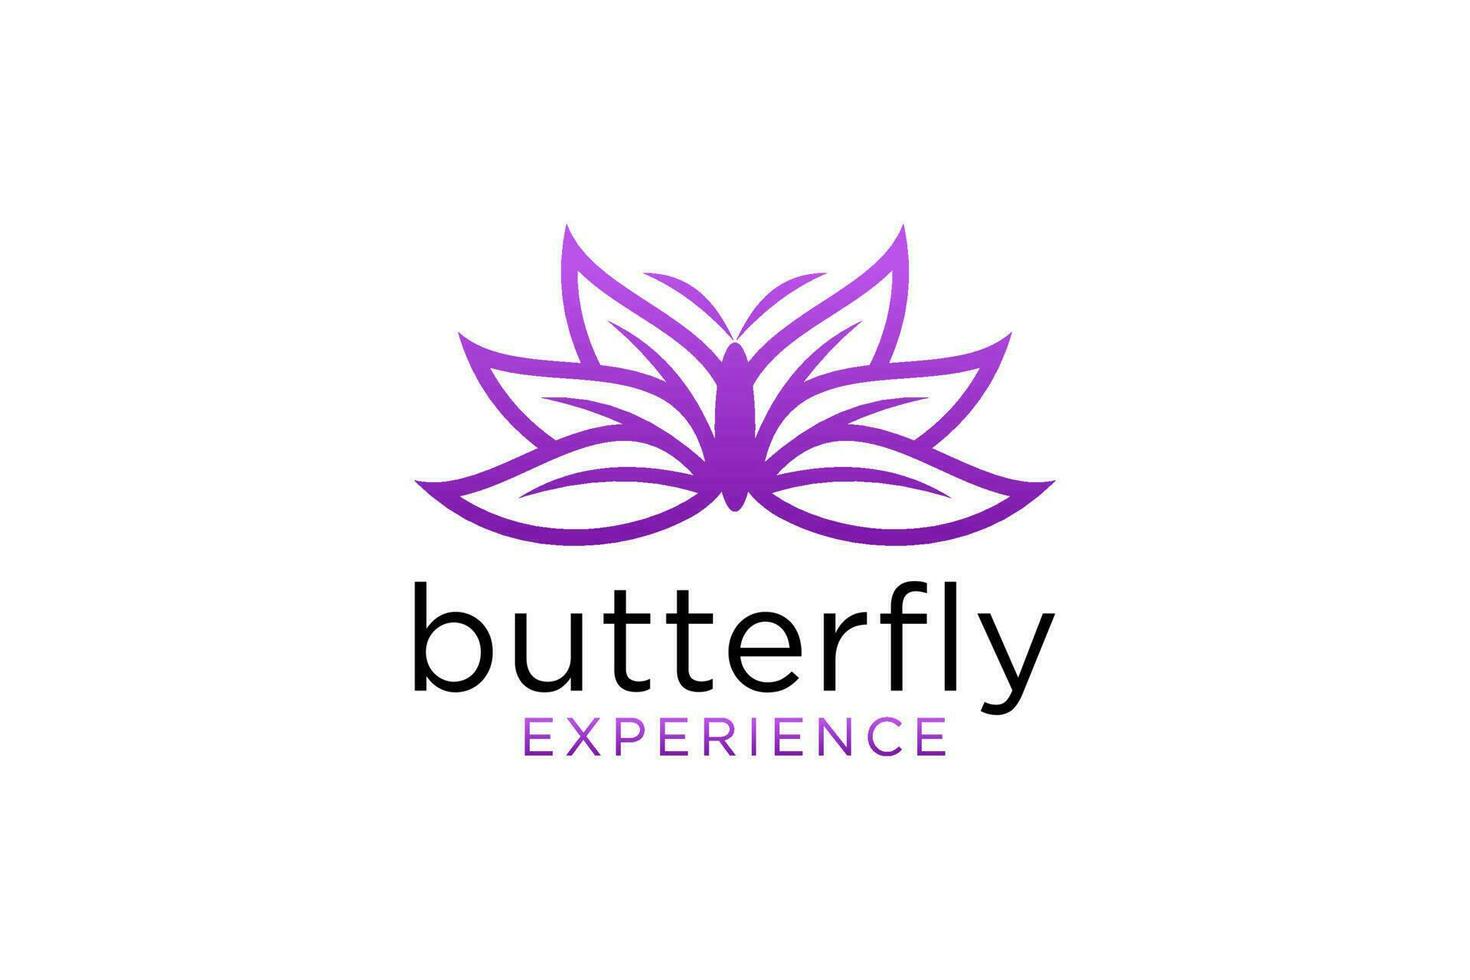 Schmetterling-Logo. Luxuslinie Logo-Design. Universelles Premium-Schmetterlingssymbol-Logo. vektor